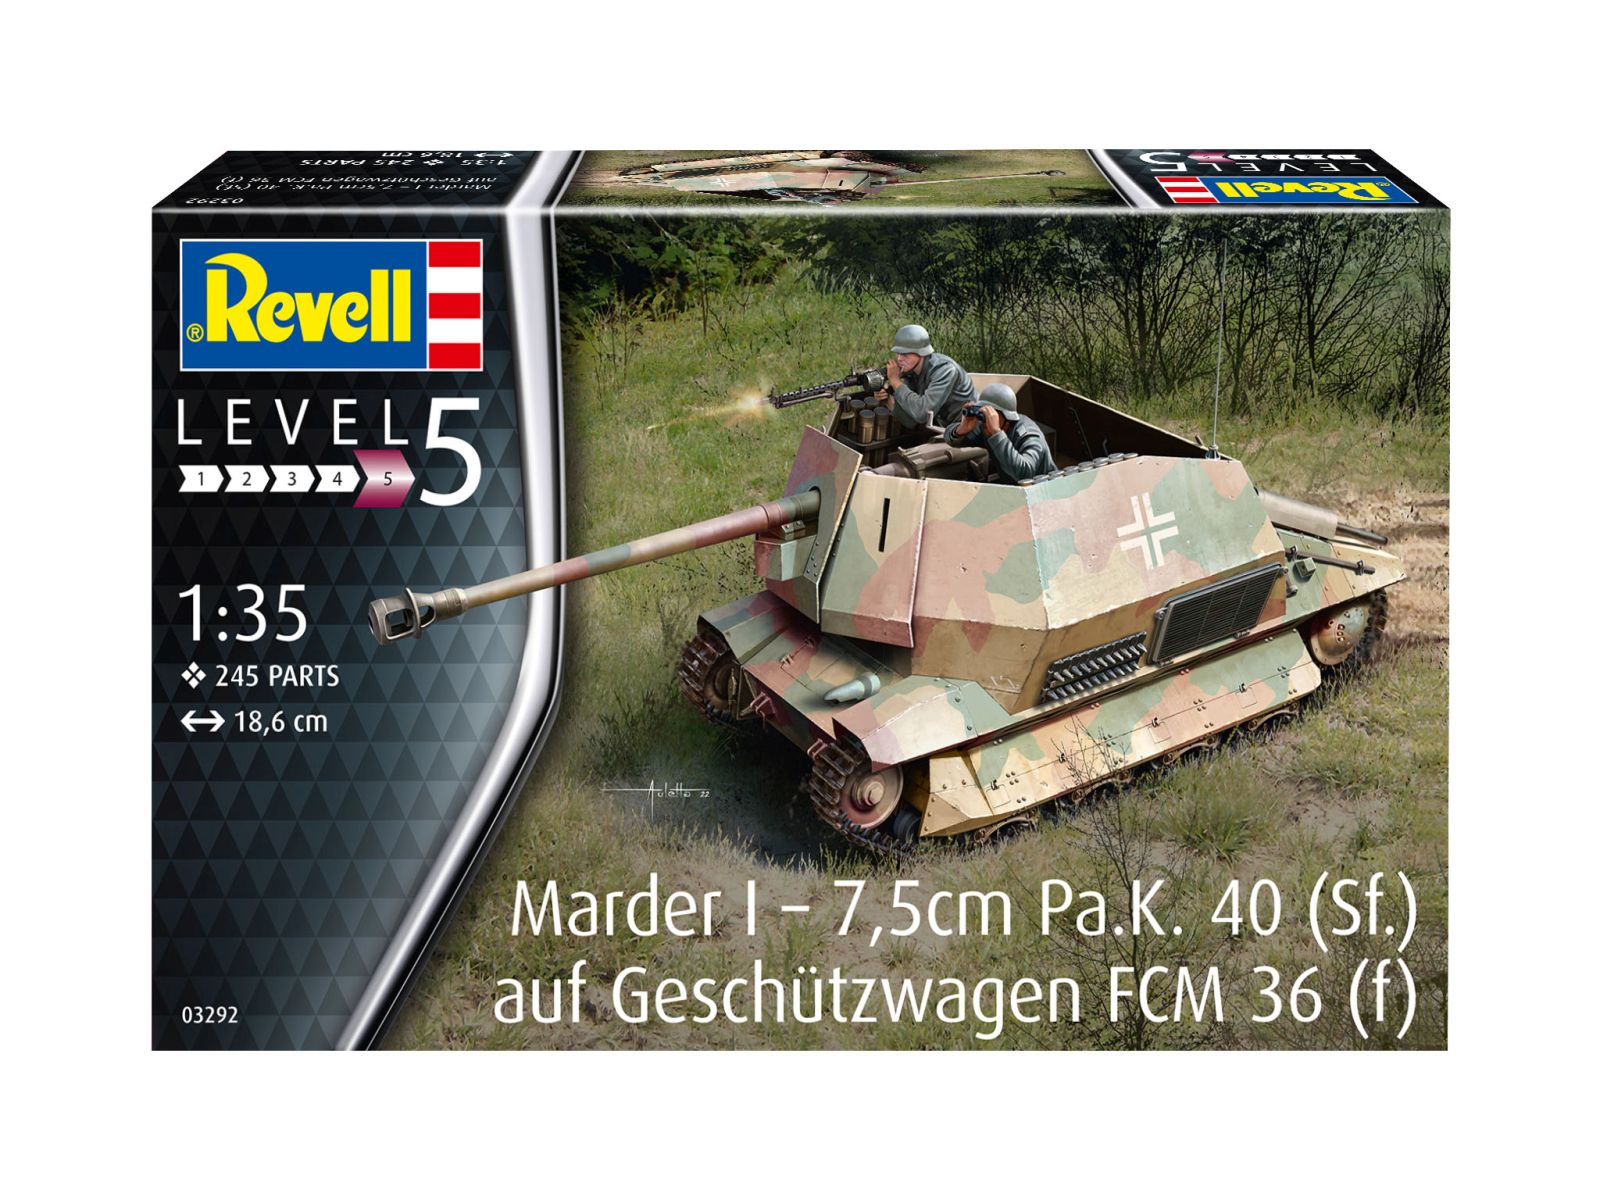 Revell 03292 - Marder I – 7,5cm Pa.K. 40 (Sf.) auf FCM 36(f)